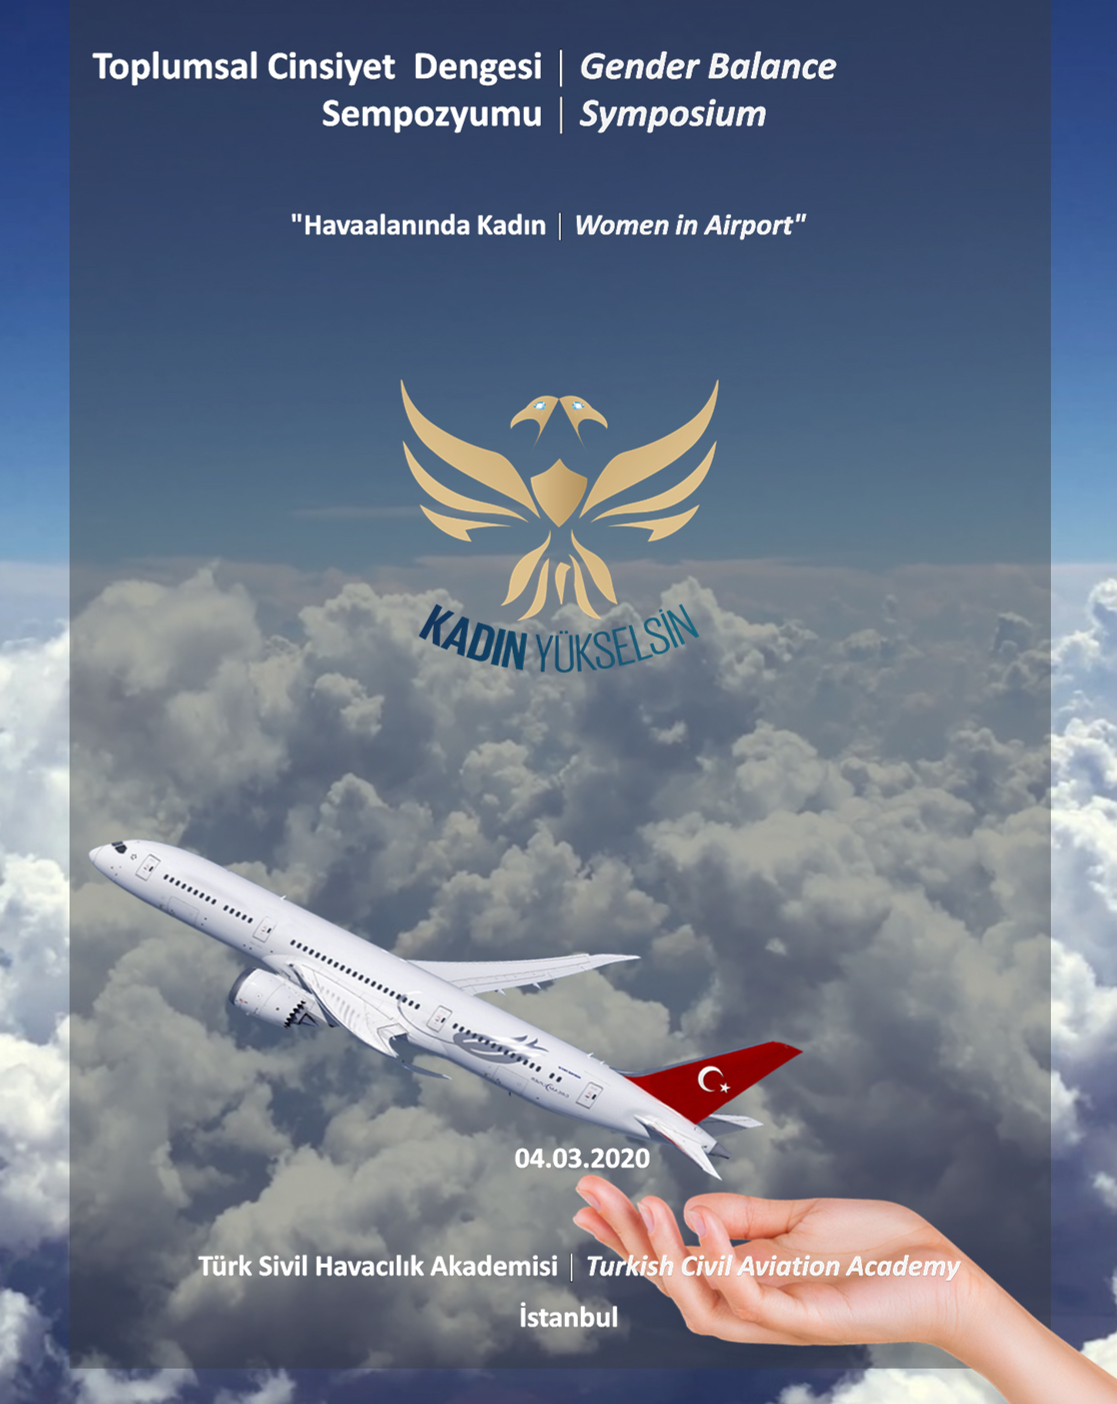 Hayallerini Uçur! – Dünya Havacı Kadınlar Haftası Kapsamında Türkiye’nin Havacı Kadınları İstanbul’da Buluşuyor